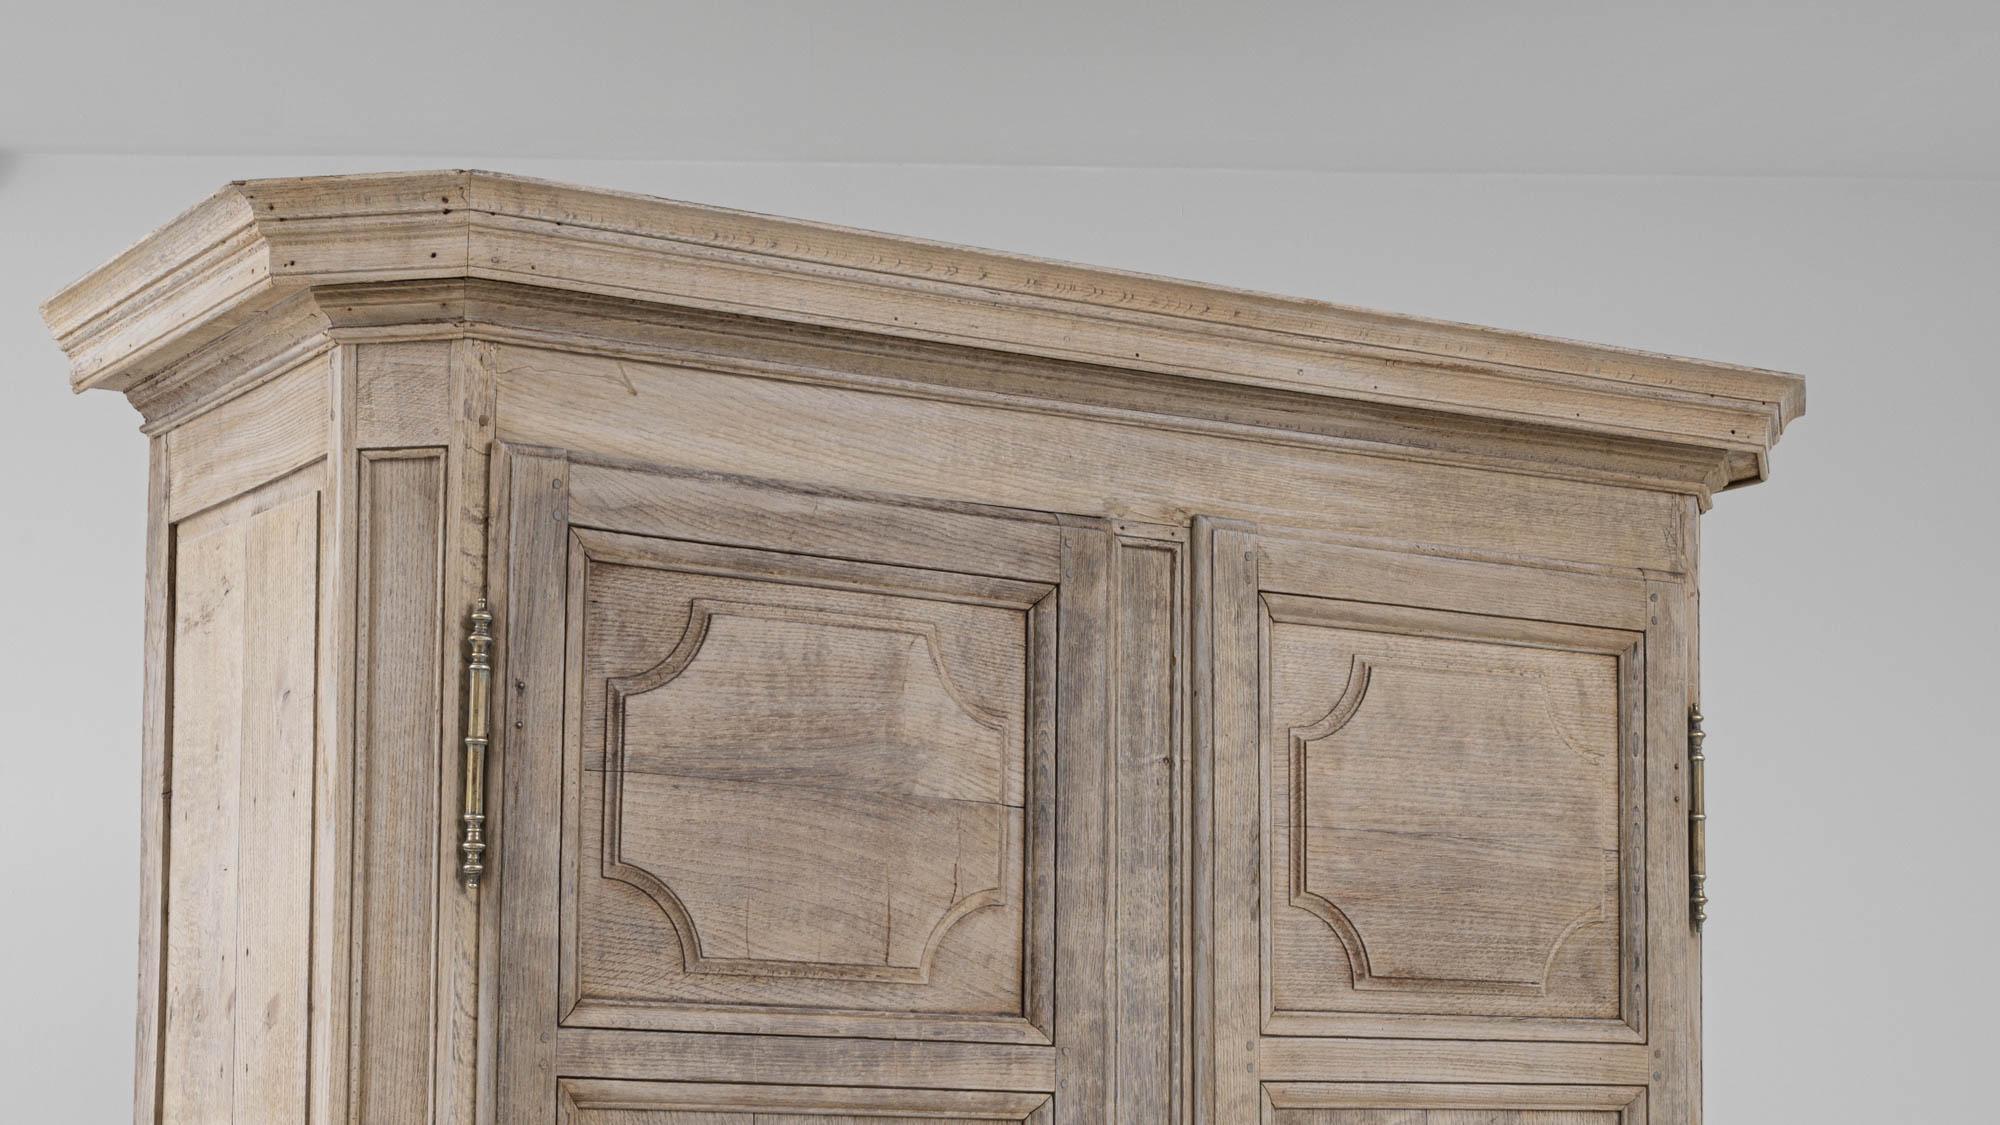 Beeindruckend in seiner Statur, ist dieser antike Eichenschrank elegant im Design gebaut. Dieser Schrank, der im 19. Jahrhundert in Frankreich hergestellt wurde, besticht durch sein wunderschönes Design, das sich aus den Kronleisten und dem